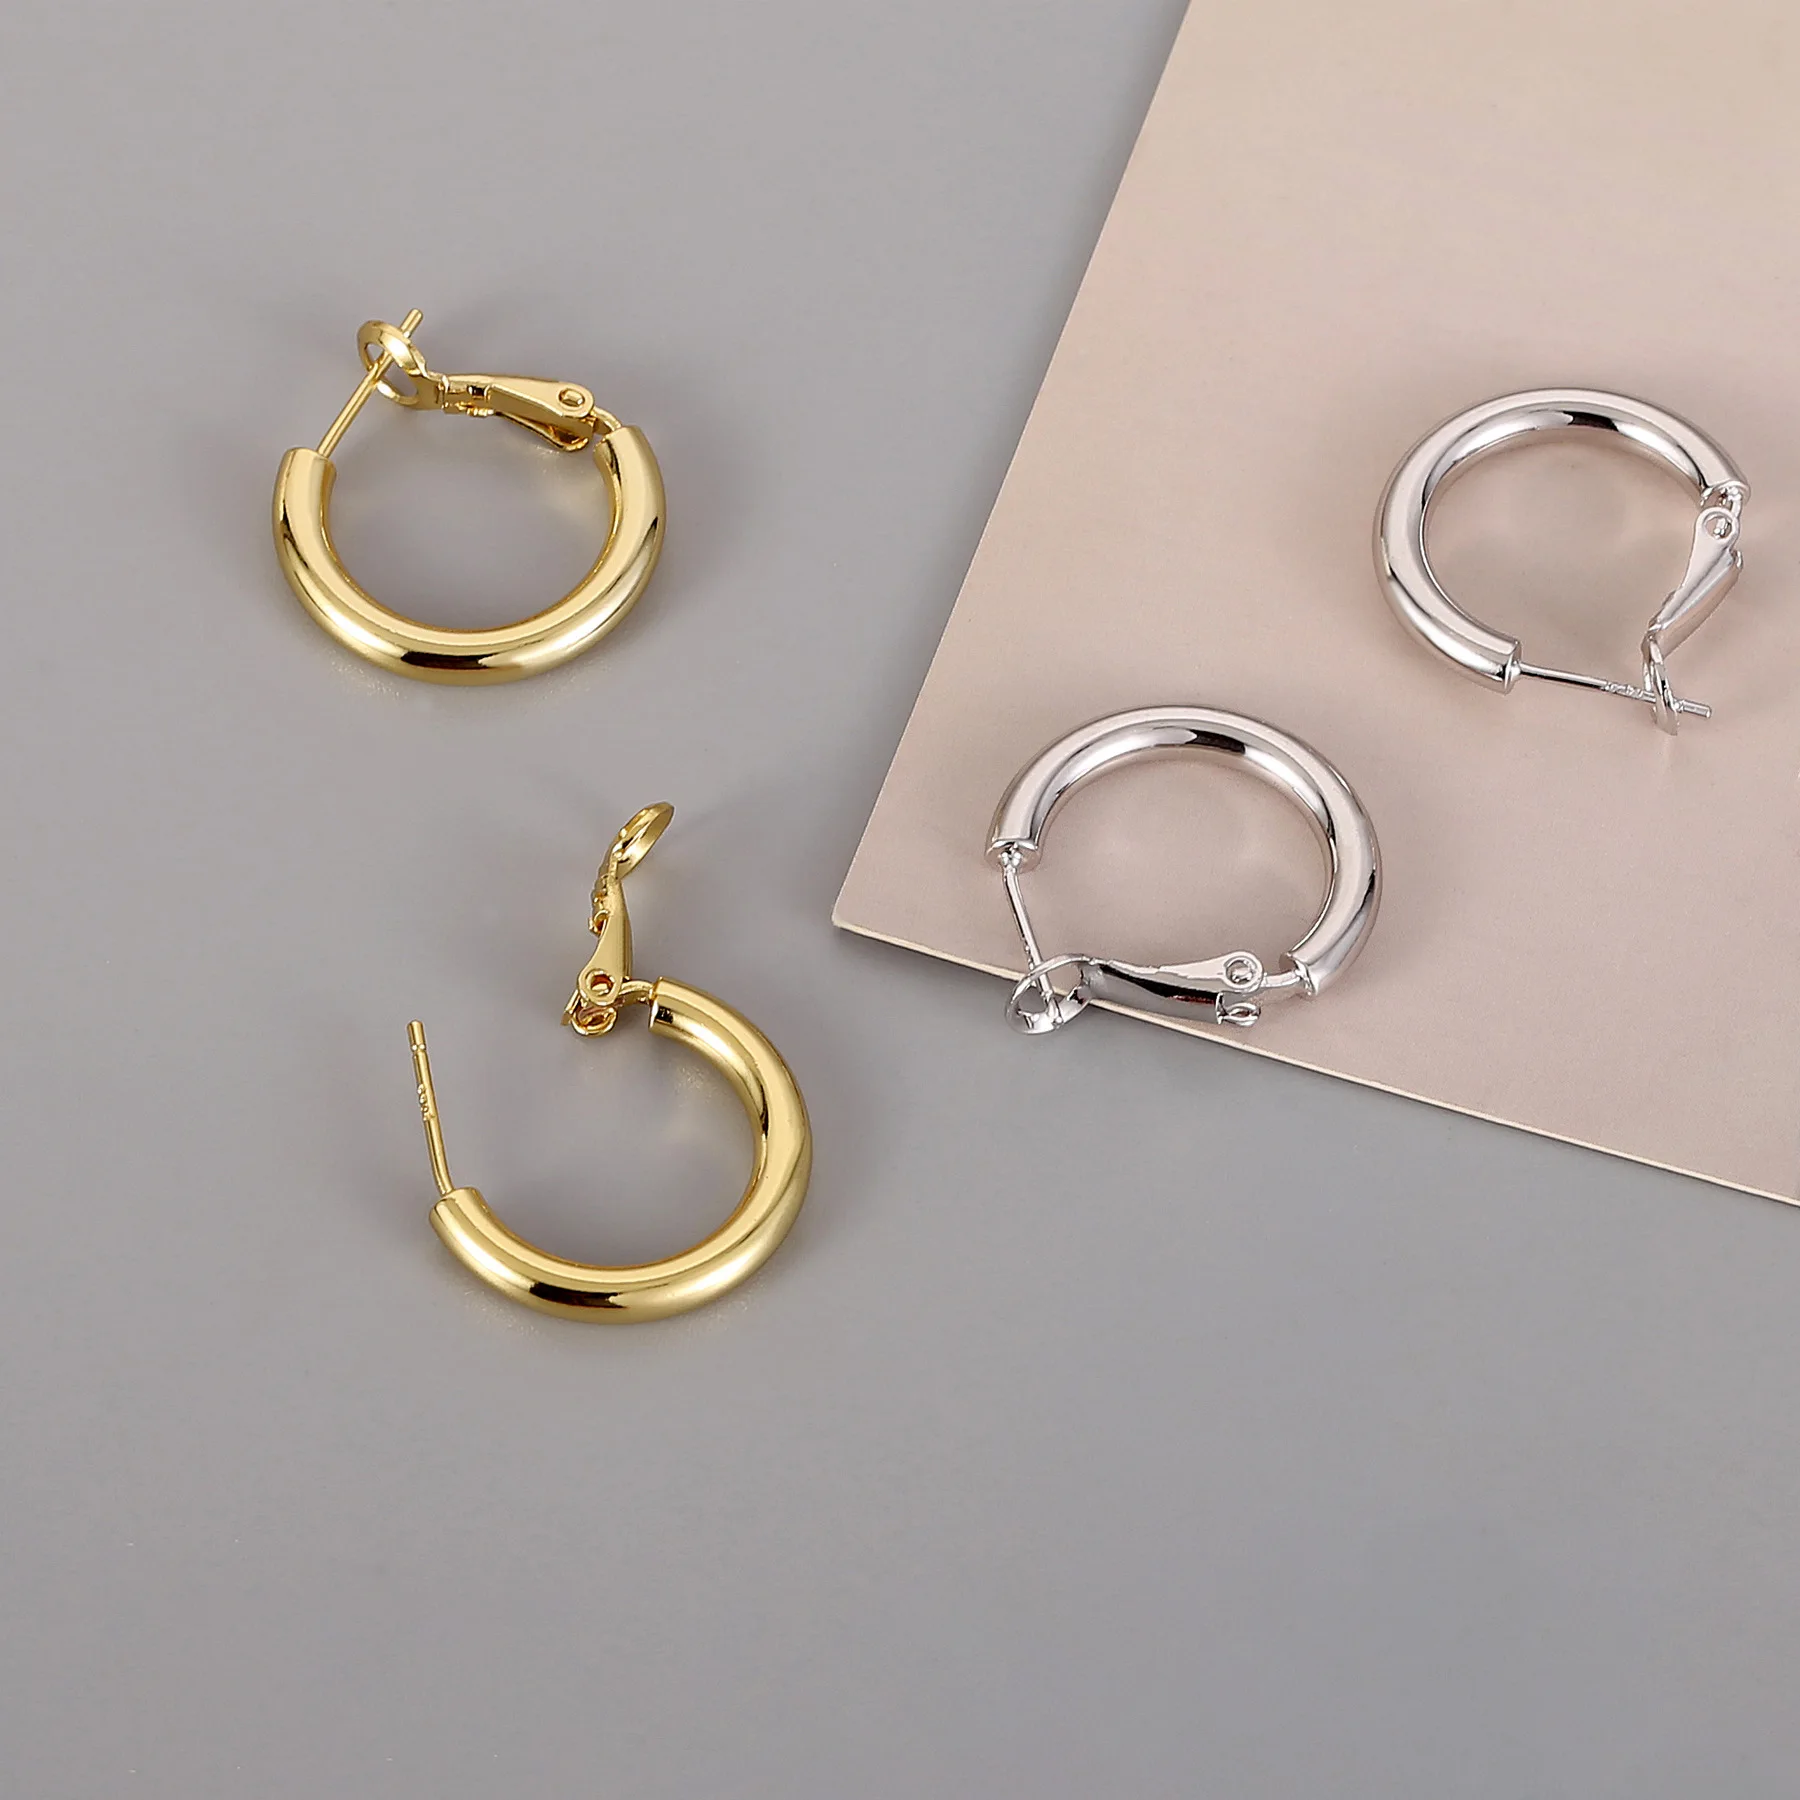 

Sandro hoop earrings jewelry fashion women 925 sterling silver earrings, Picture shows